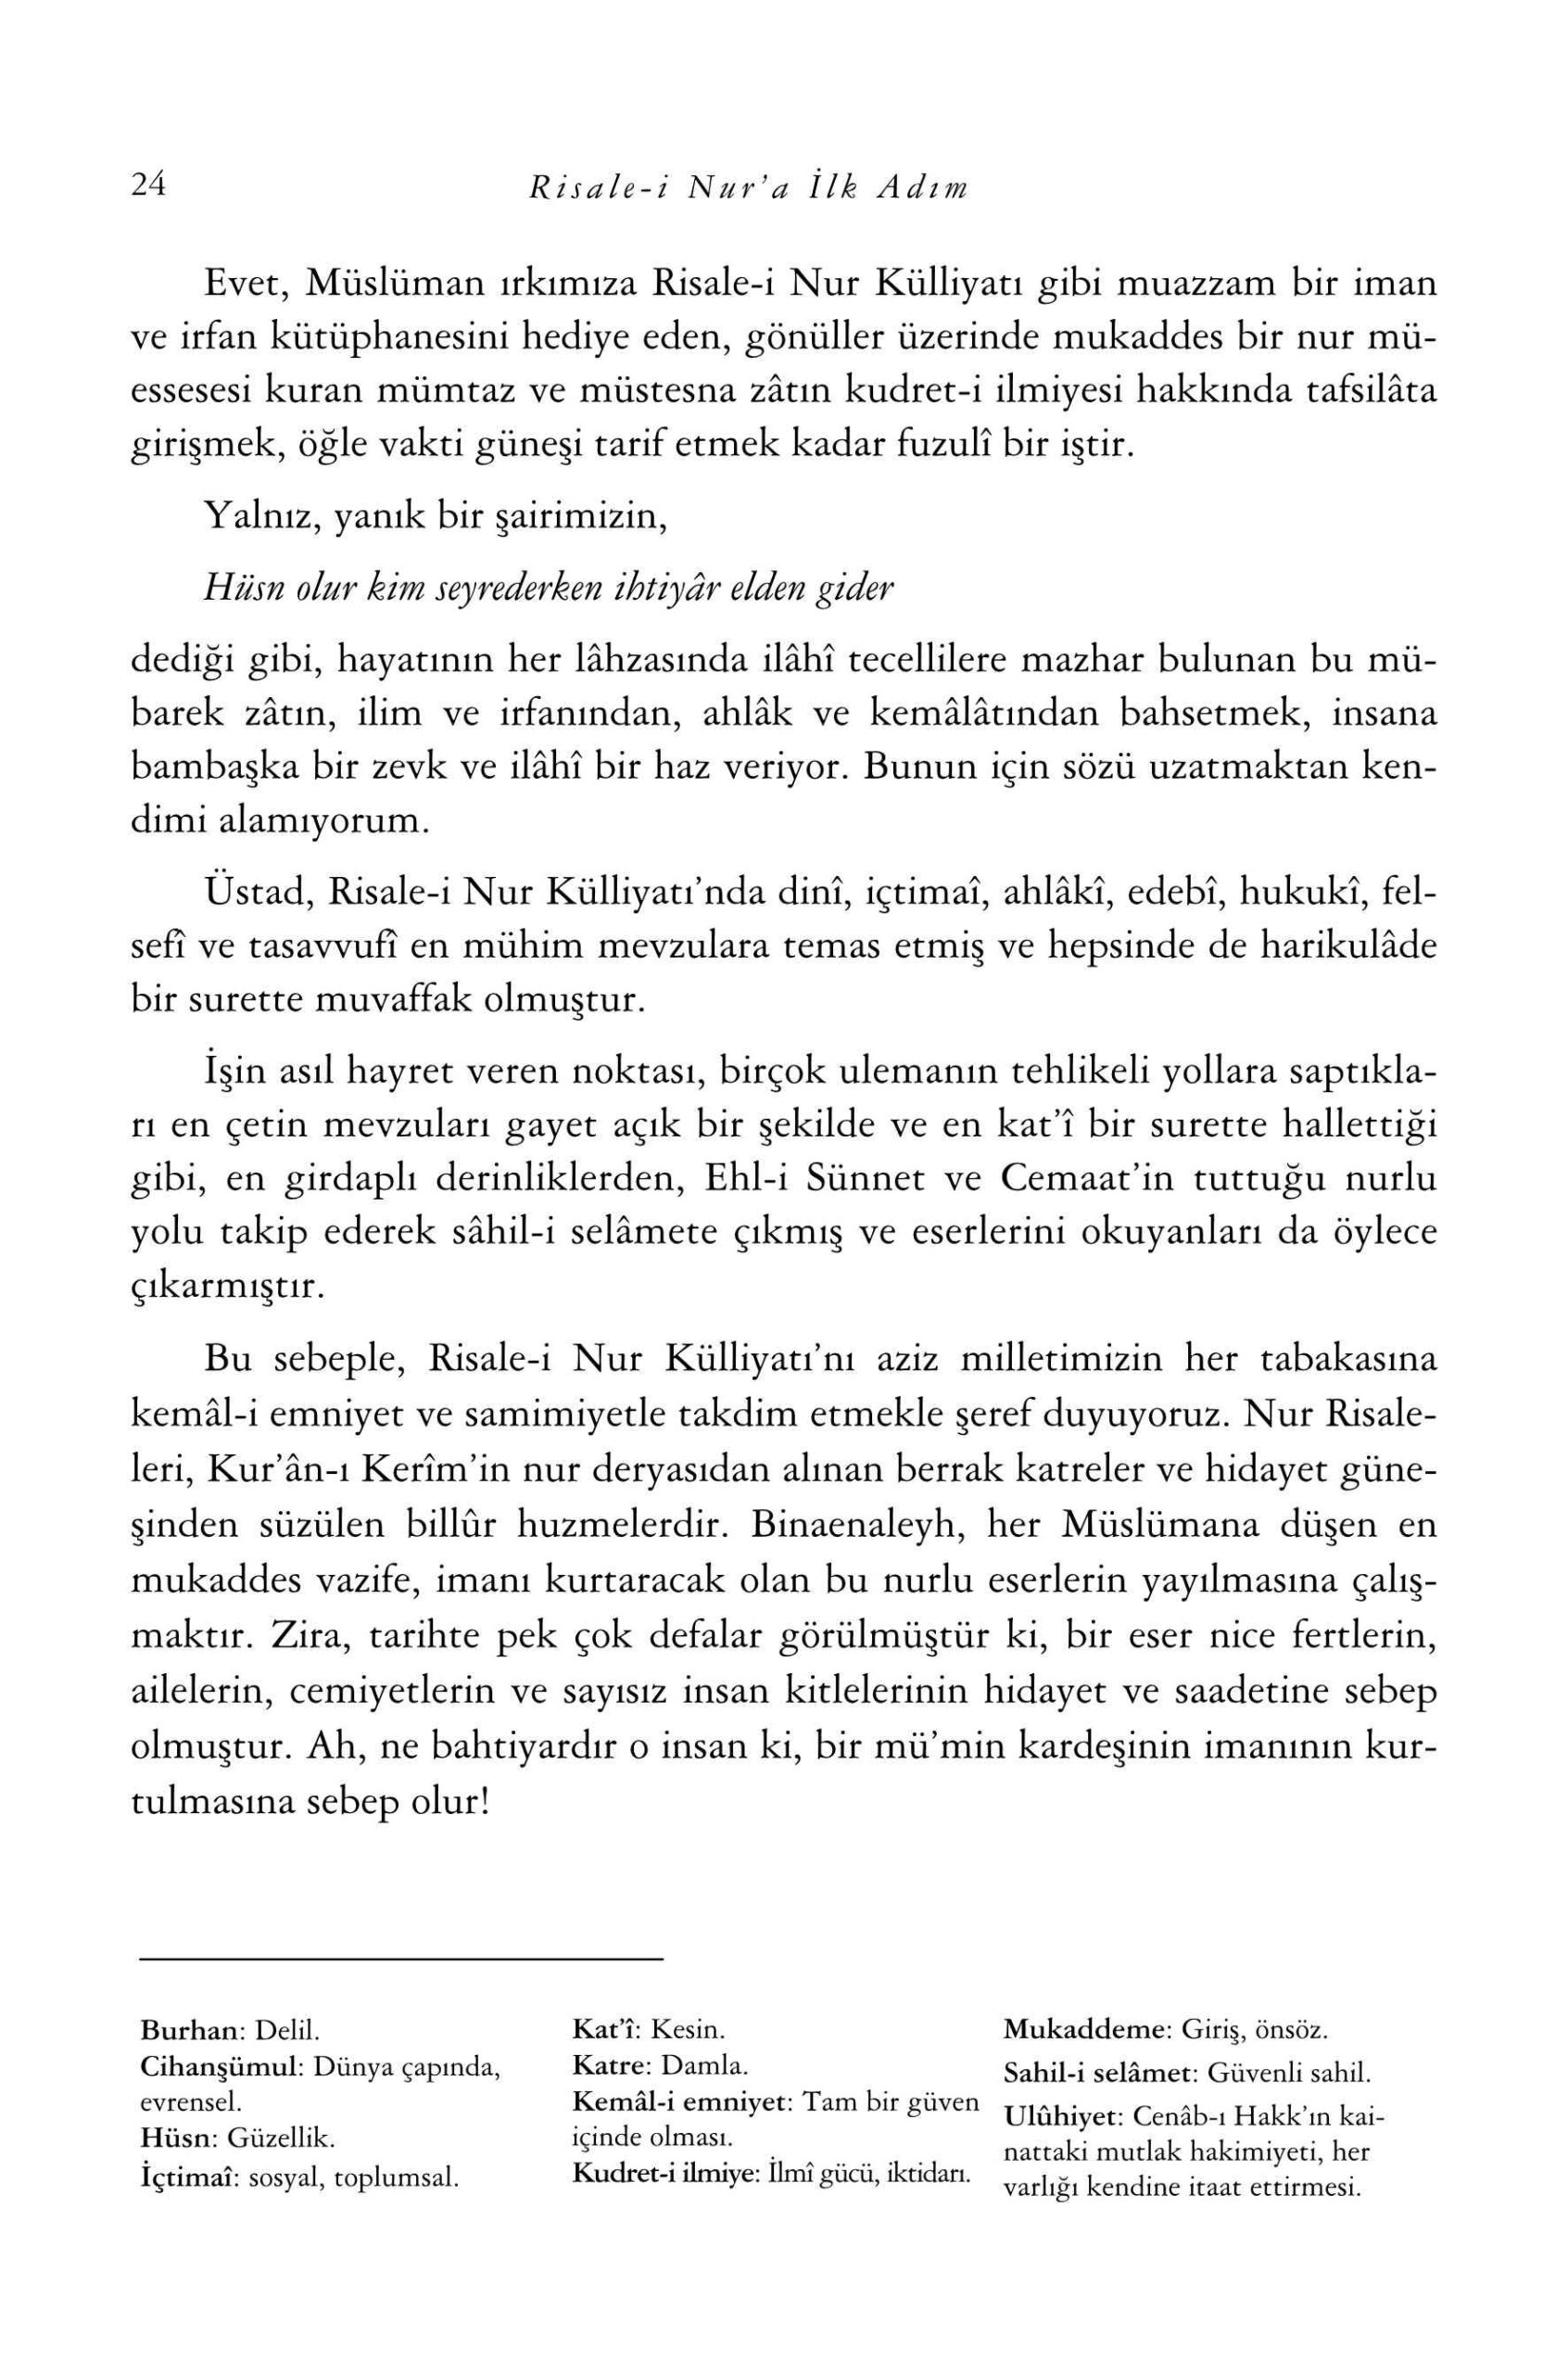 Riza Okuyan - Risaleyi Nura Ilk Adim (Secme Metinler) - SahdamarY.pdf, 153-Sayfa 